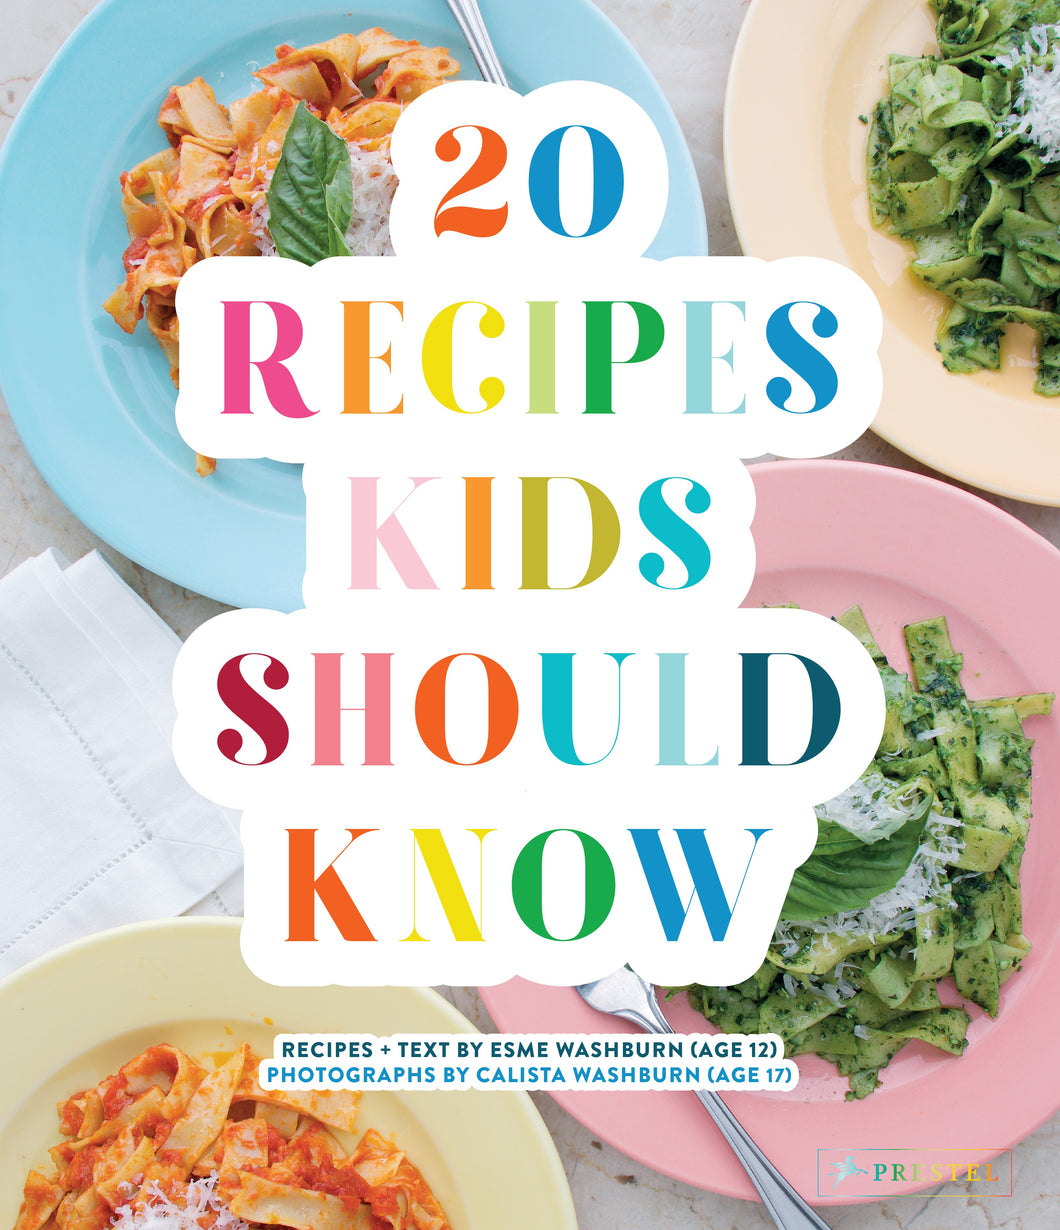 Twenty Recipes Kids Should Know